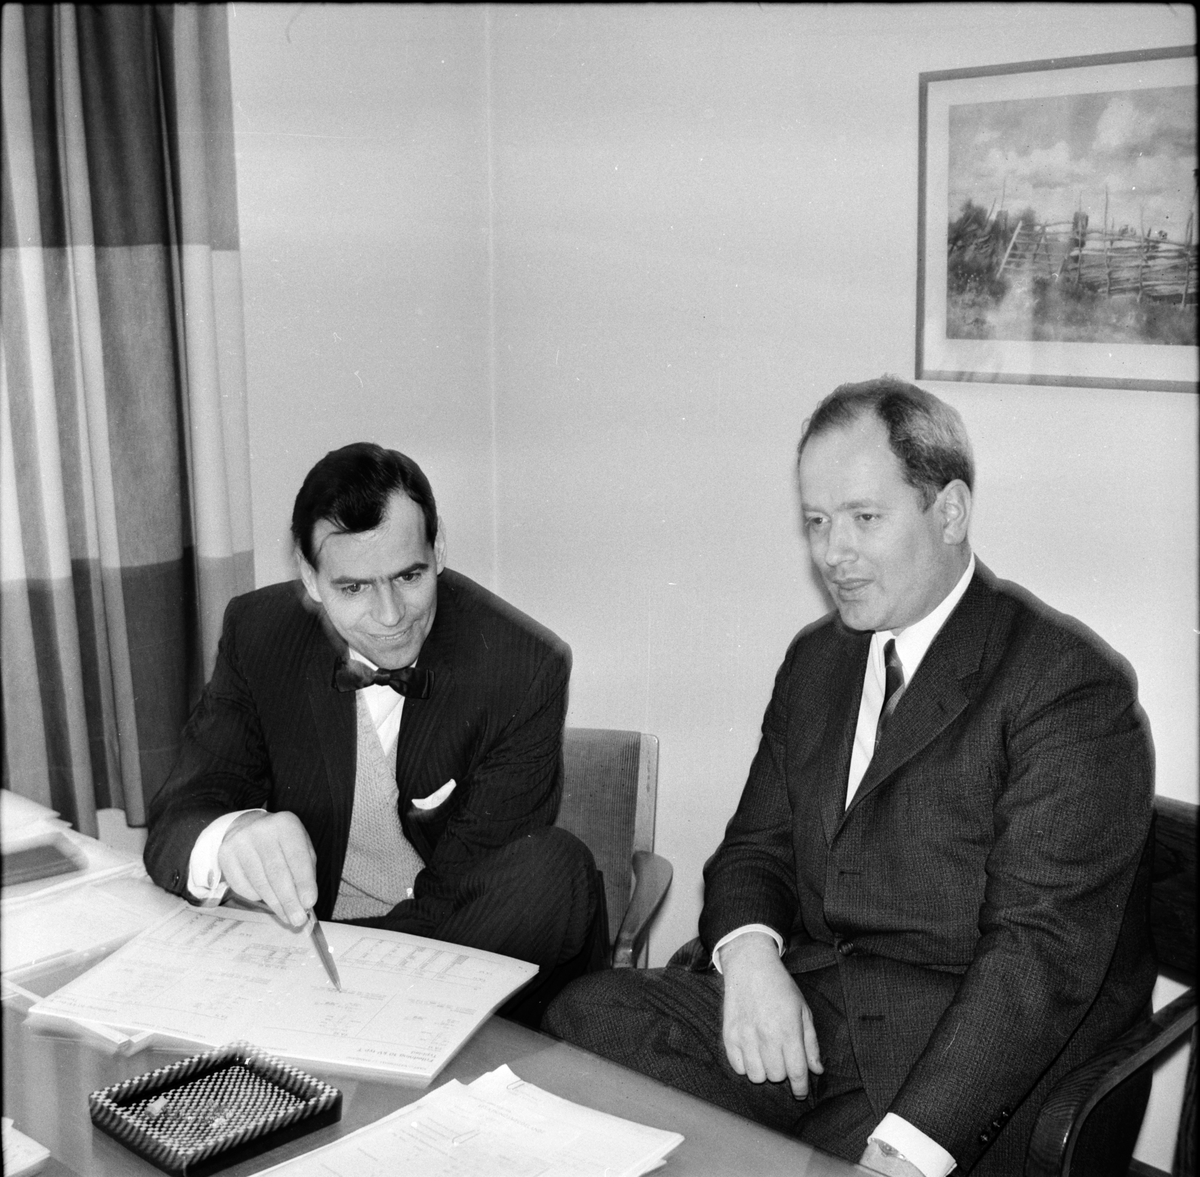 Arbrå,
Kraftverkets visning,
9 December 1967
Till höger Arbrå kraftverks chef Wrebo.